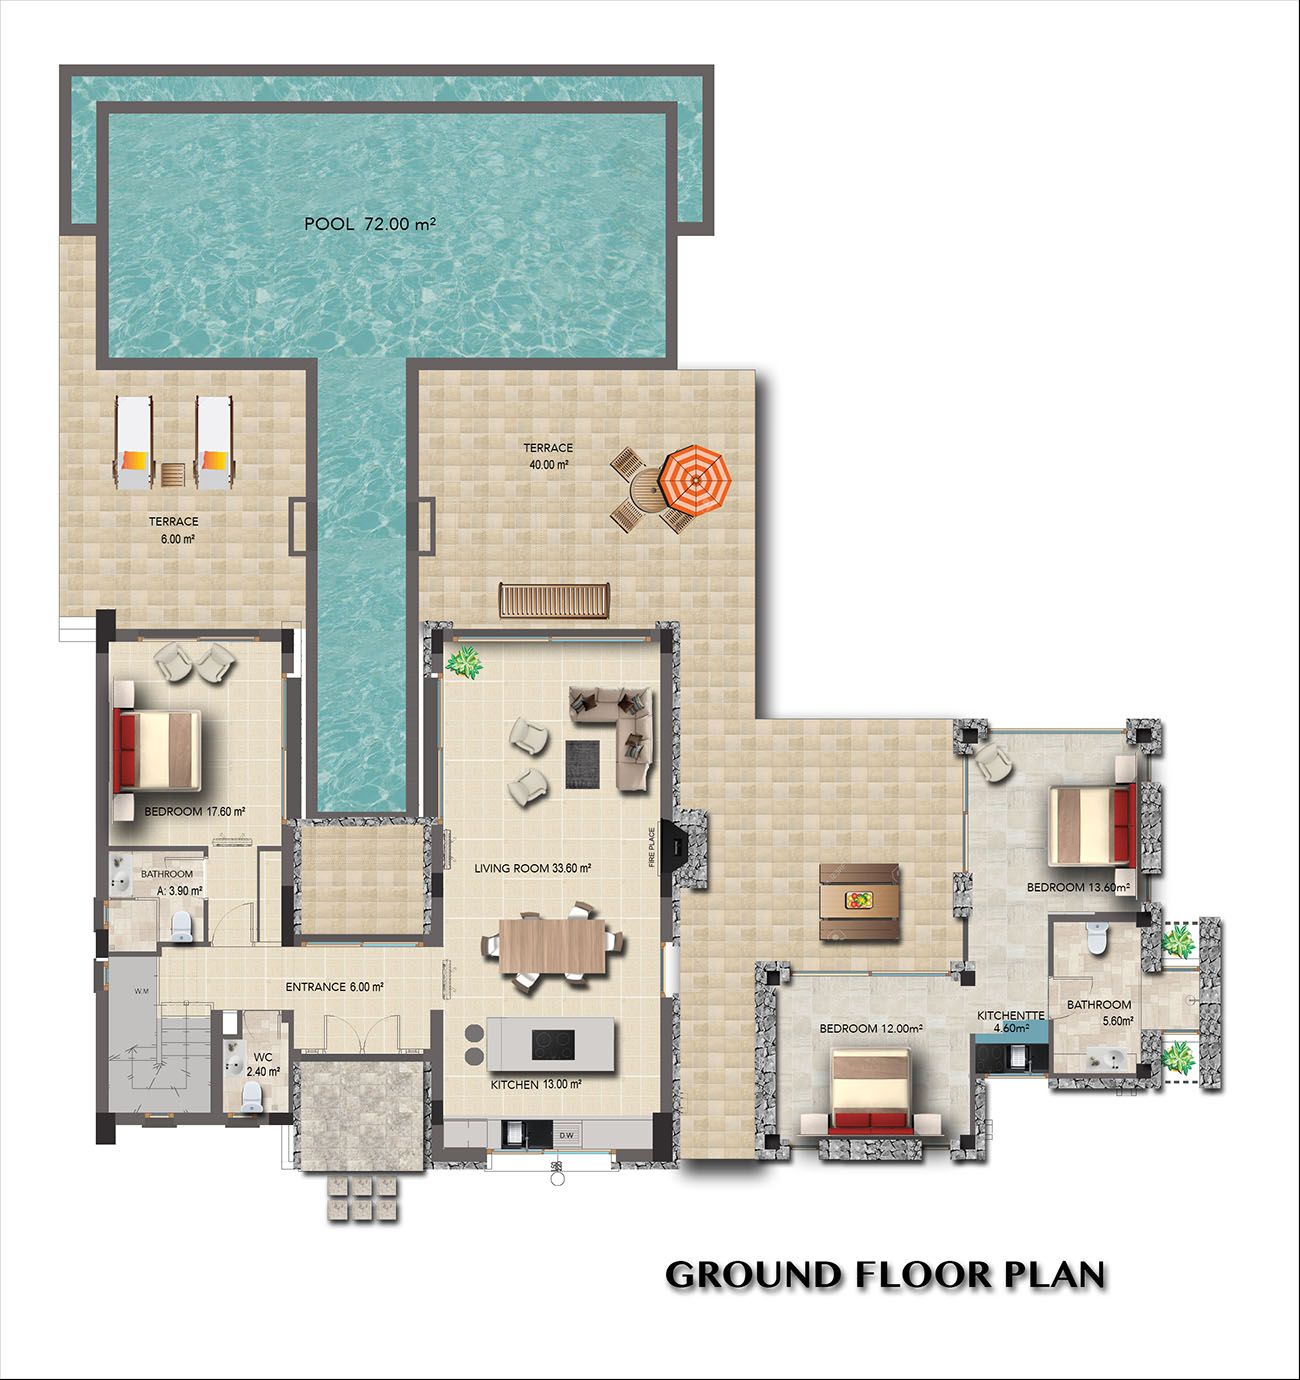 Floor Plan - 5/6 bedroom villa / Ground Floor